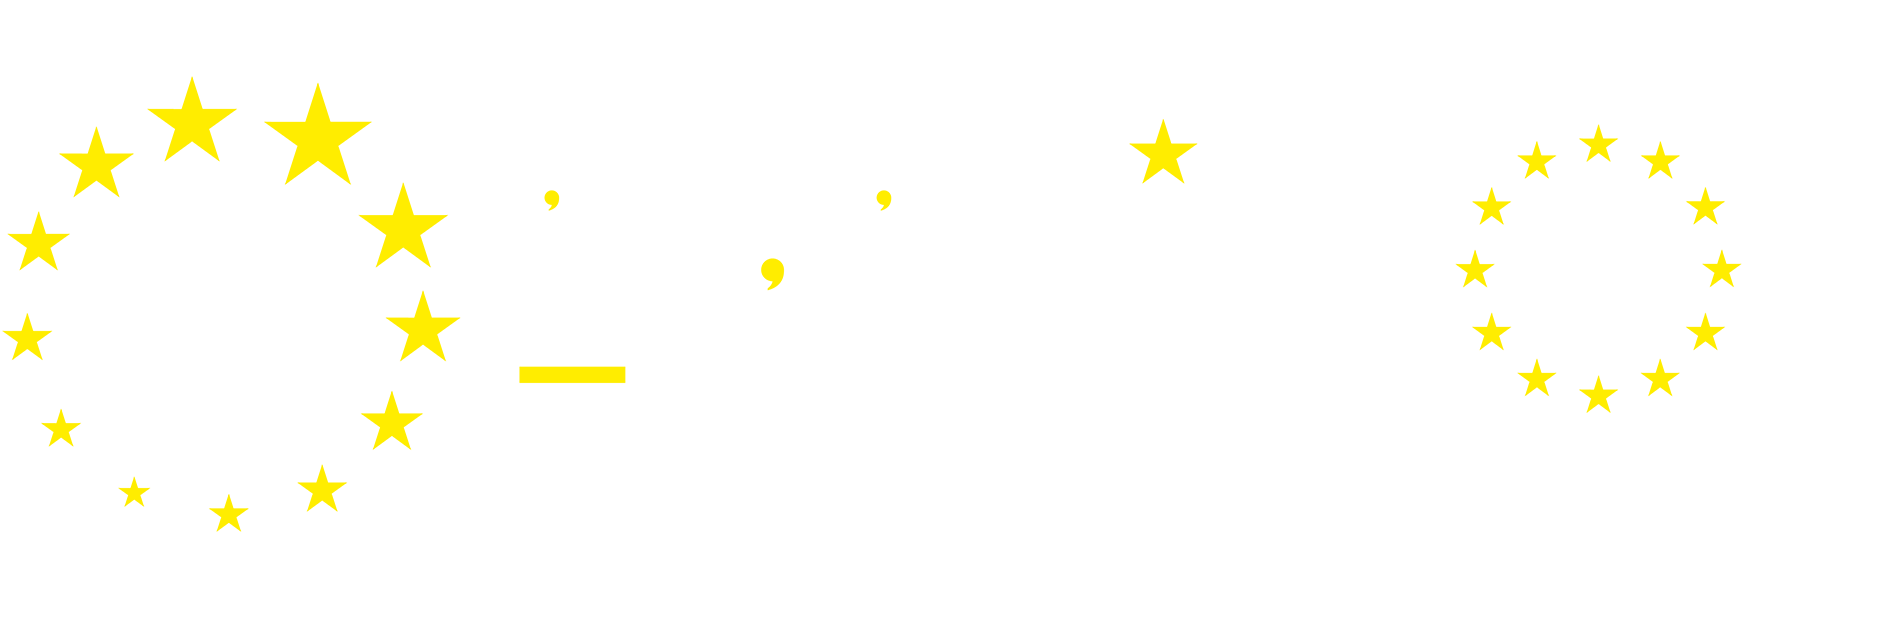 L'europe s'engage en rÃ©gion Auverge RhÃ´ne Alpes avec la feder